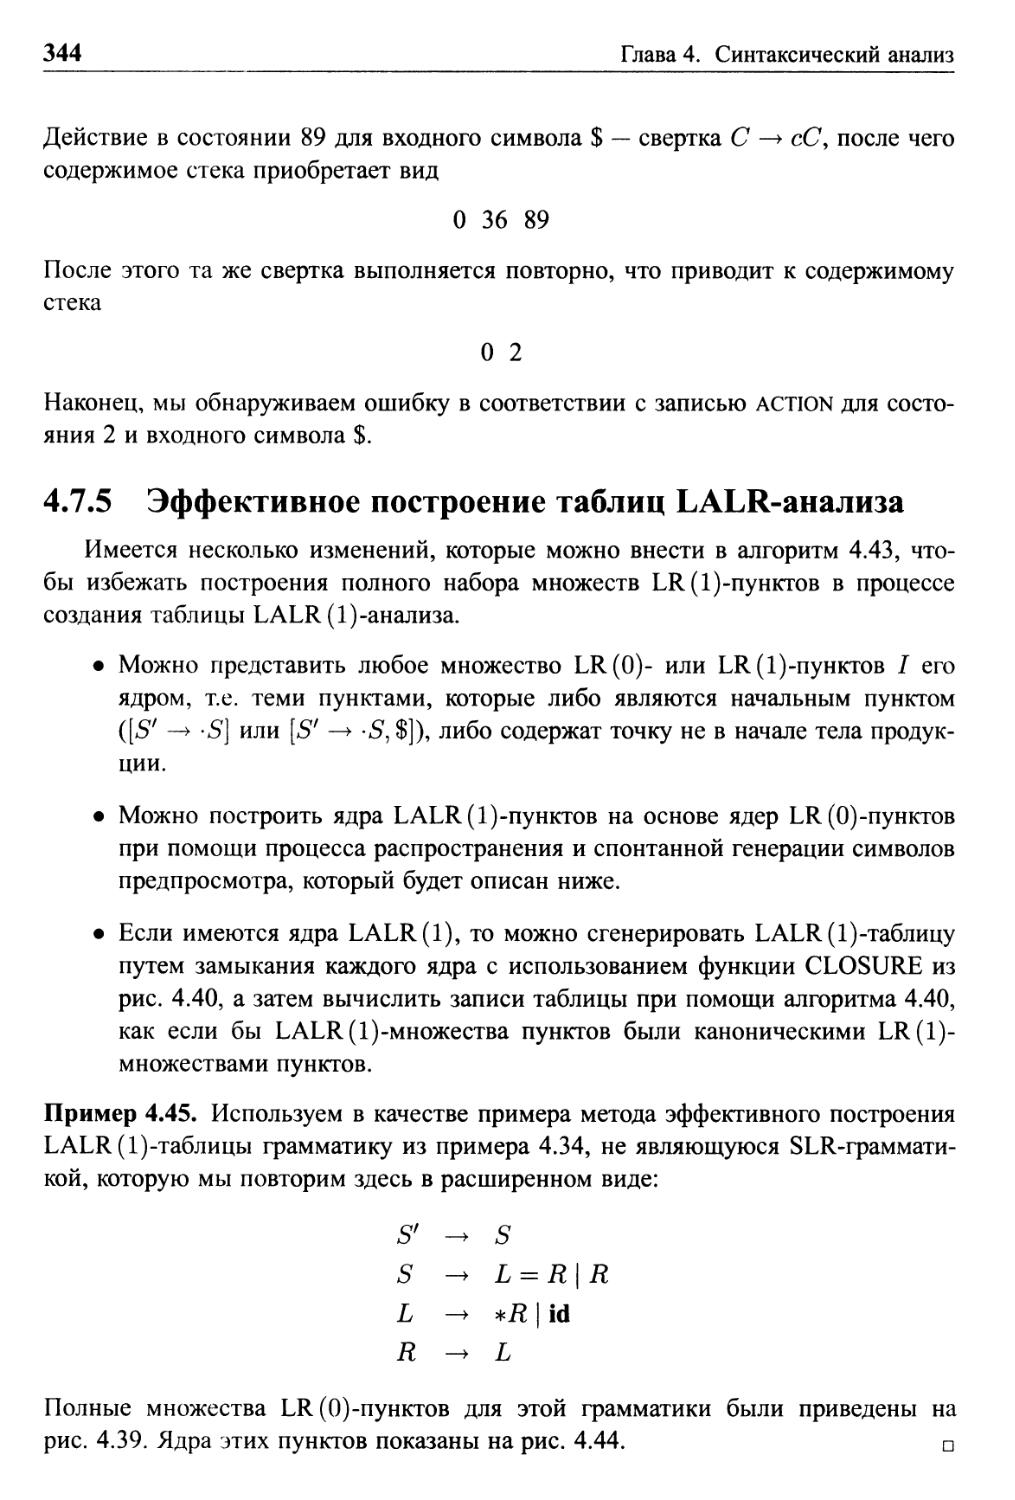 4.7.5 Эффективное построение таблиц LALR-анализа